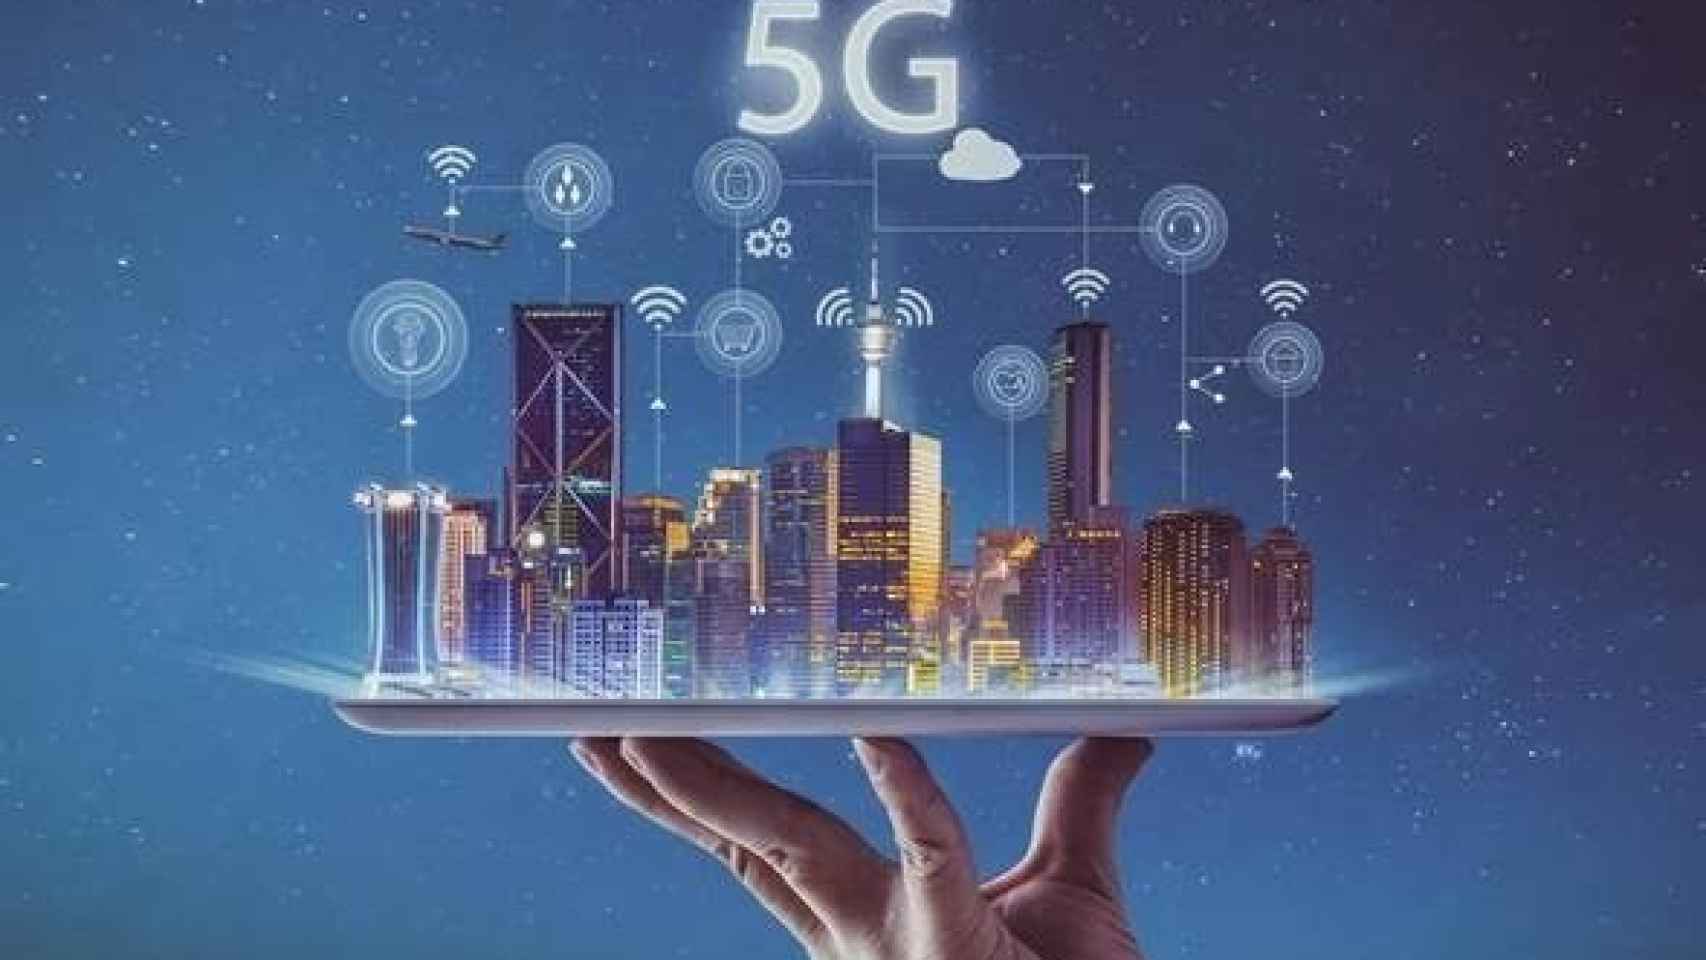 Imagen sobre las posibilidad de conexión que ofrece la nueva tecnología móvil 5G